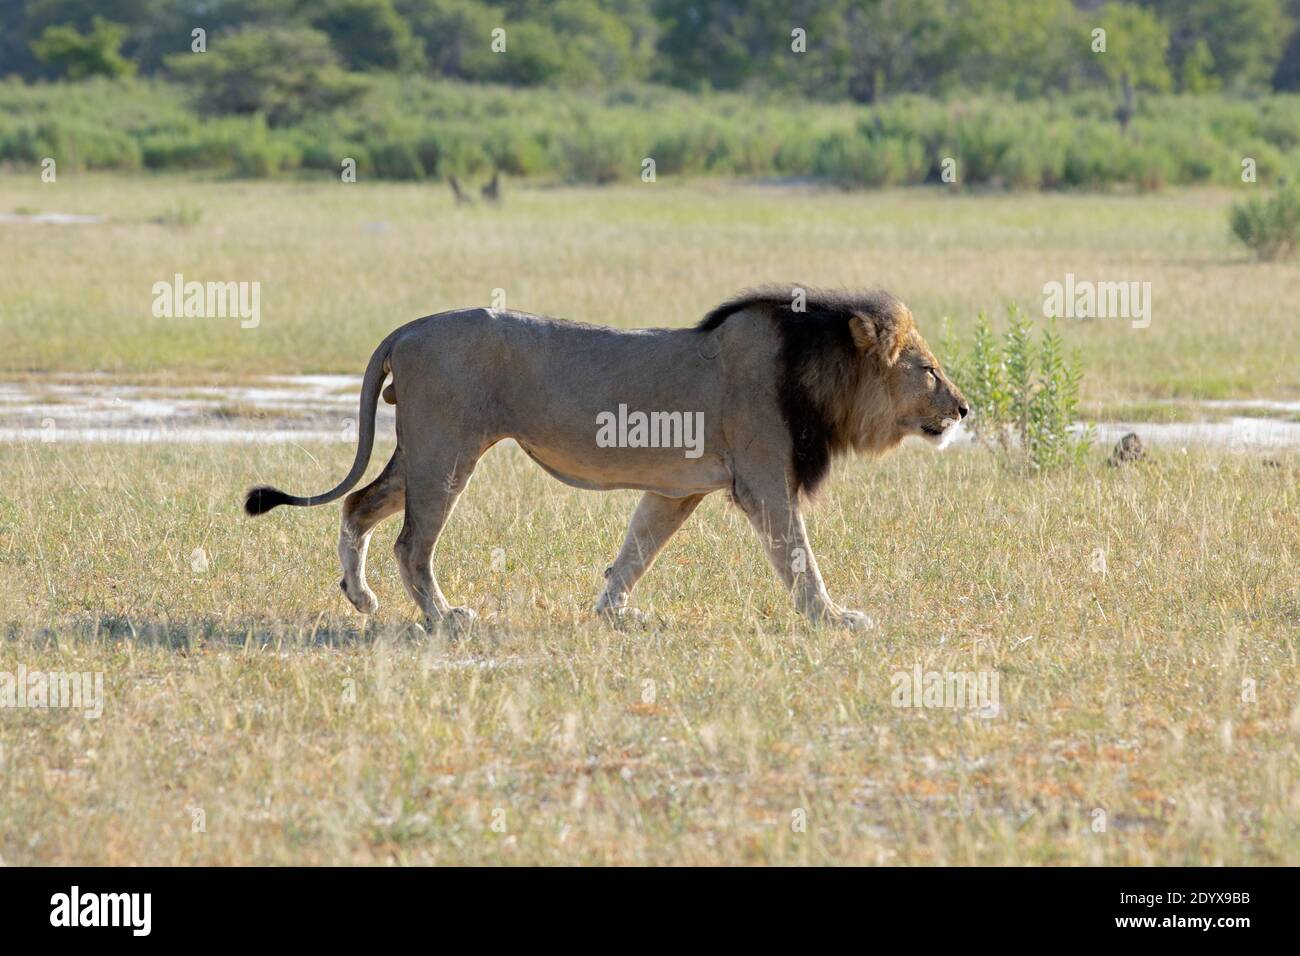 Afrikanischer Löwe (Panthera lio). Gehen im Freien, mit einem entschlossenen, zielgerichteten Schritt Seitenansicht, volles Profil. Kopf leicht abgesenkt, Ohren zurück, foll Stockfoto